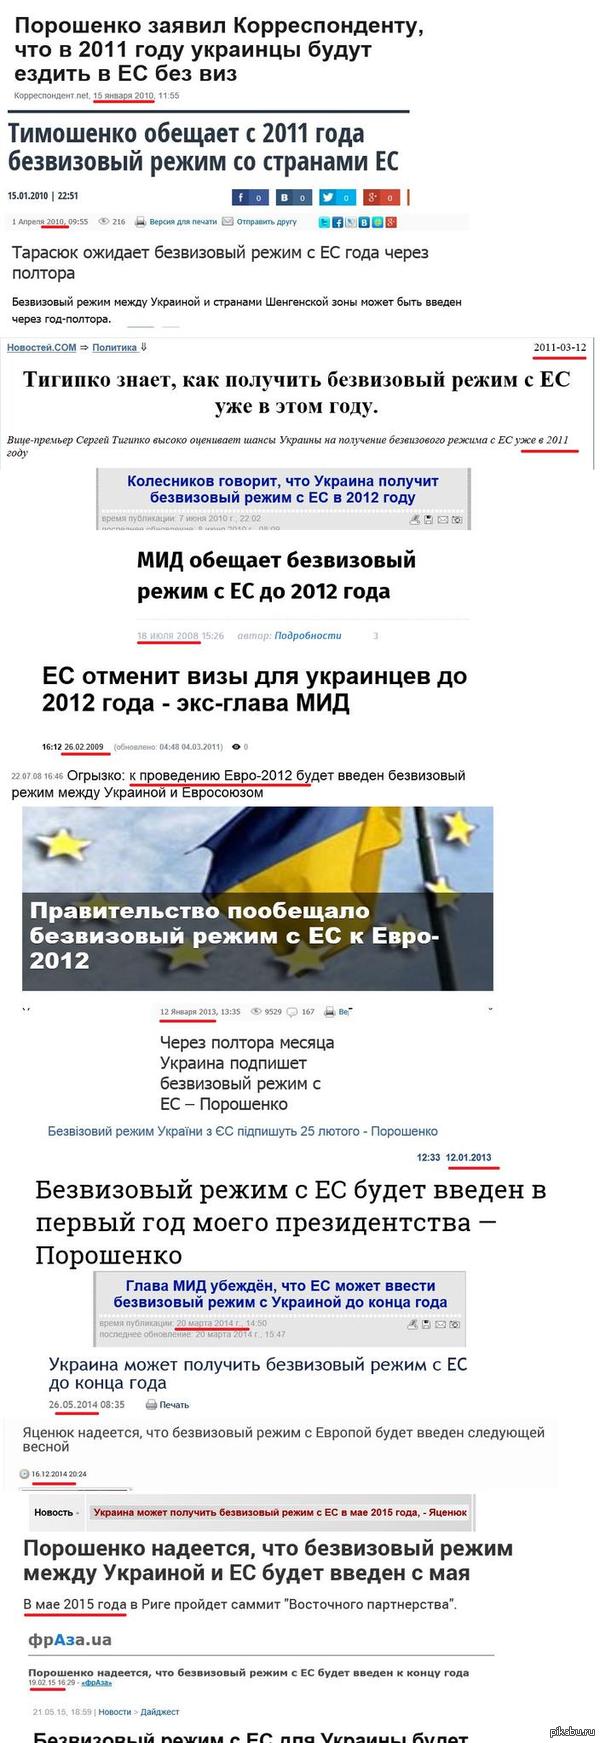          http://podrobnosti.ua/2035626-sammit-v-rige-ukraine-razreshili-stat-chastju-evropy.html    